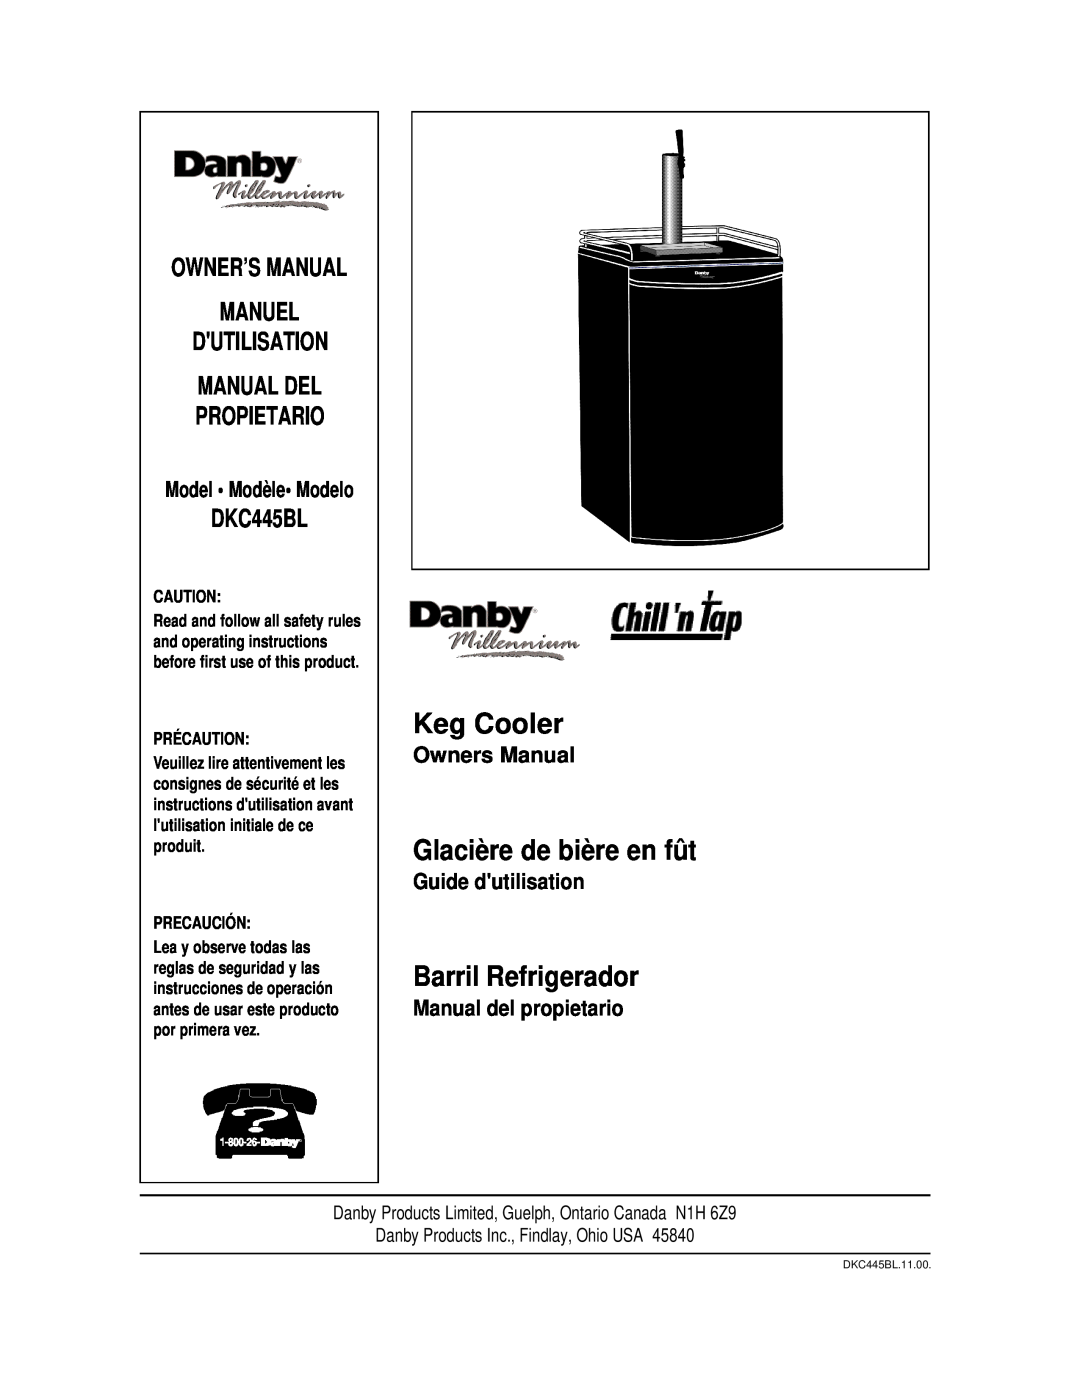 Danby DKC445BL Keg Cooler, Glacière de bière en fût, Barril Refrigerador, Propietario, Owners Manual, Guide dutilisation 